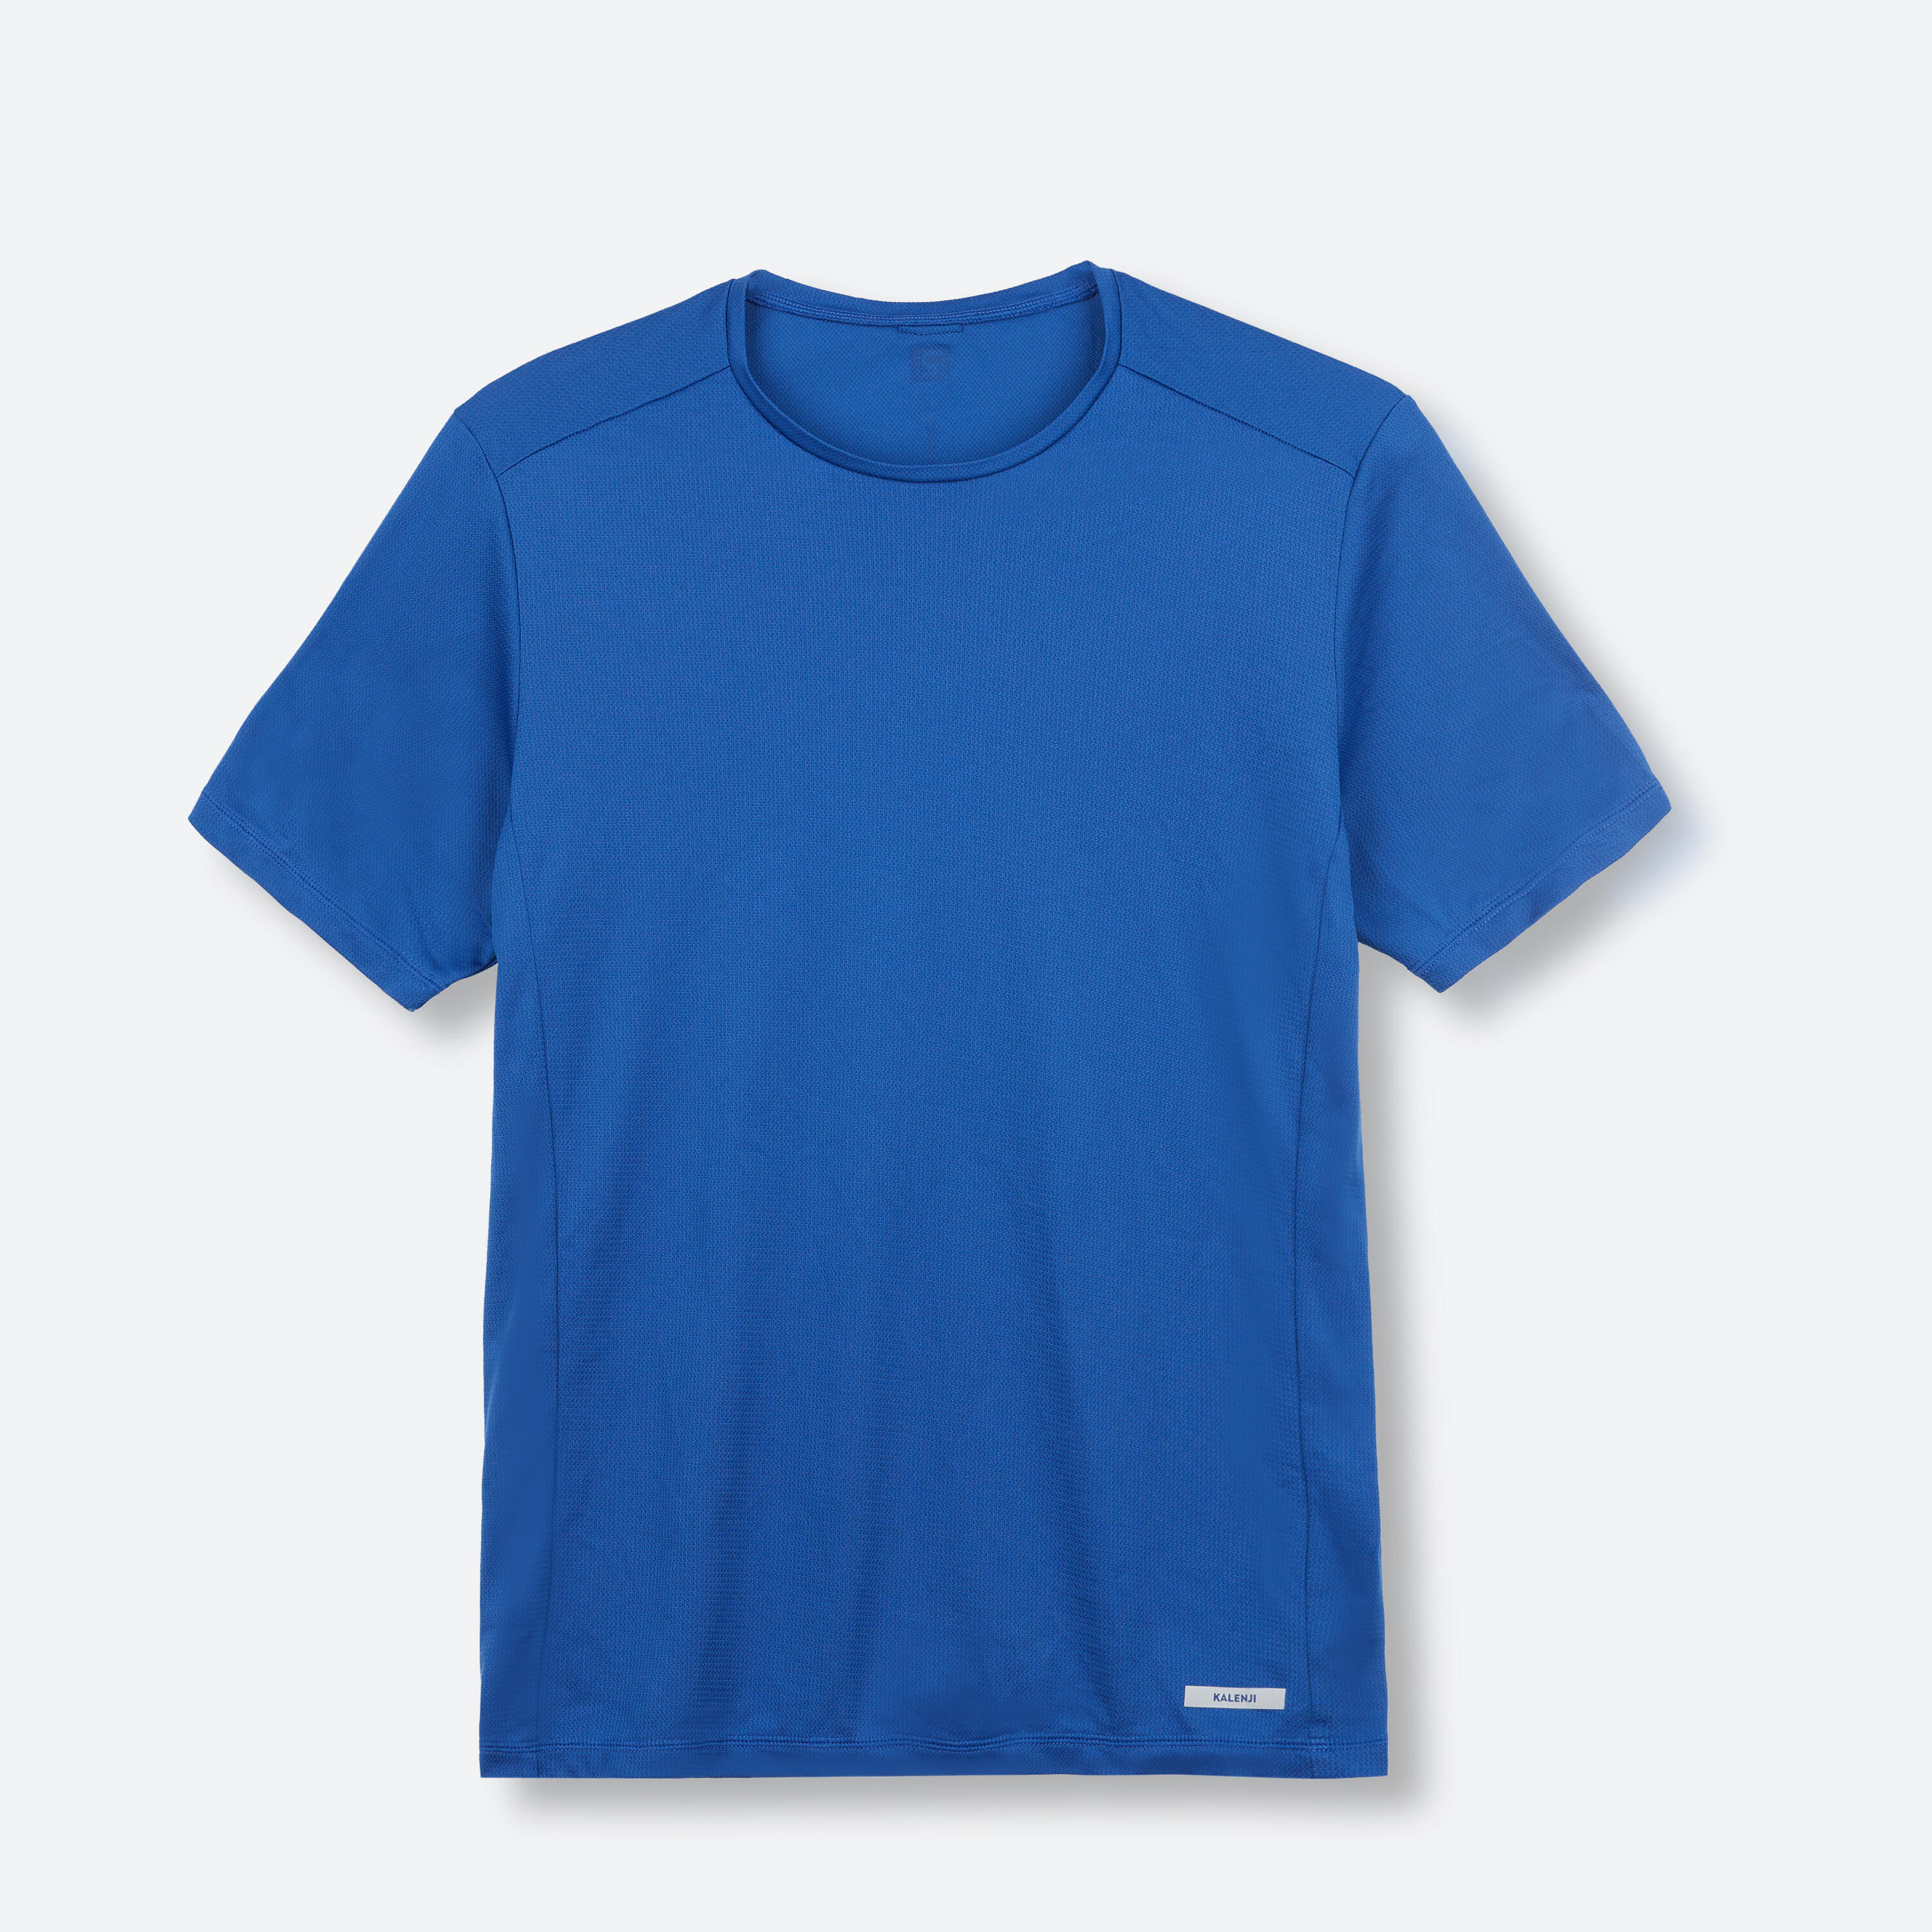 Dry Men's Running Breathable T-shirt - Blue 2/3